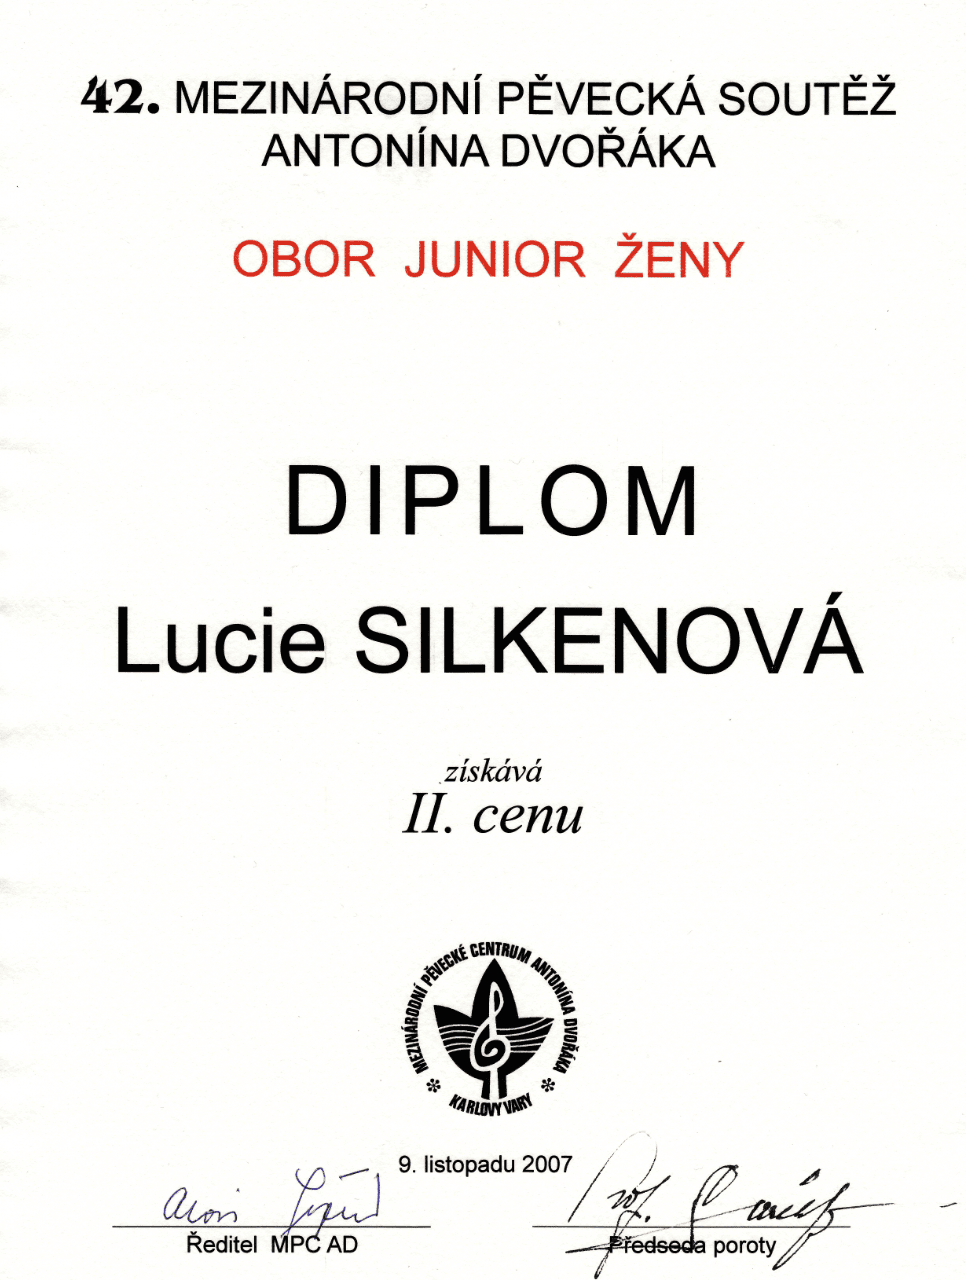 Lucie Silkenová - diplom